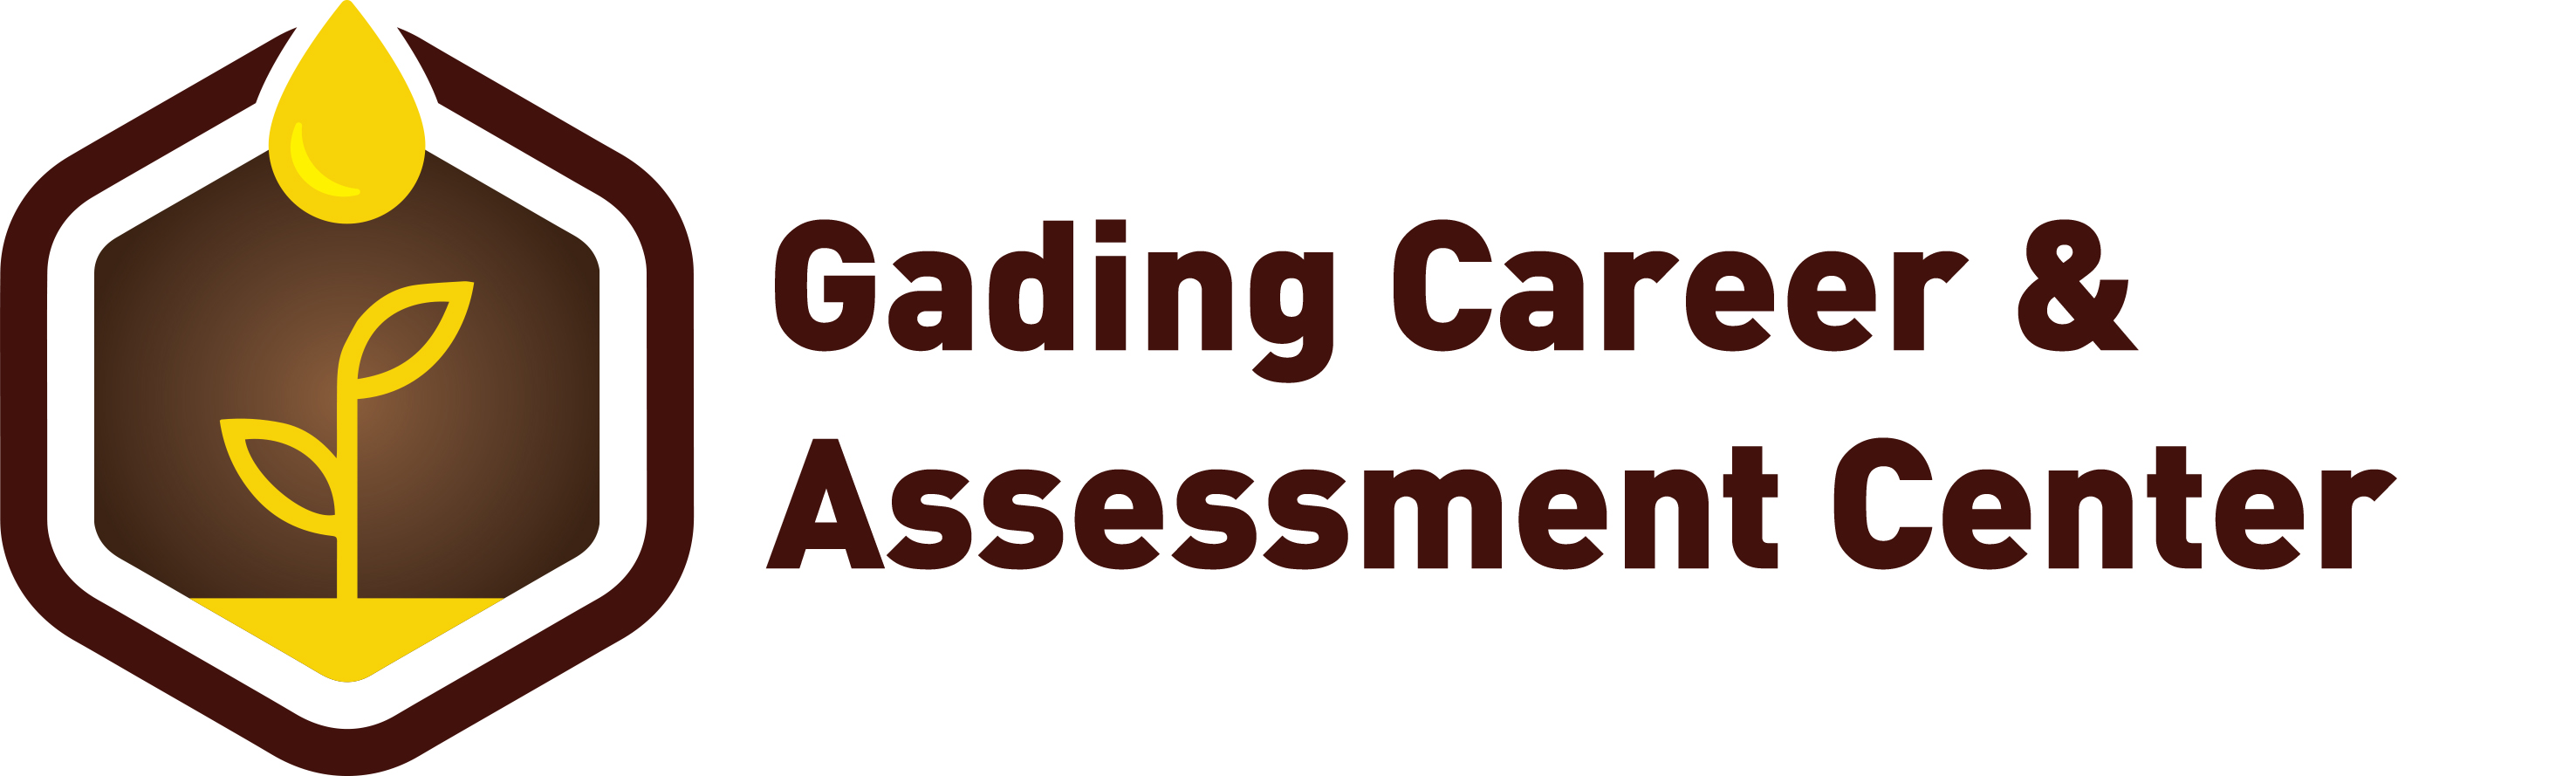 Gading Career & Assessment Center